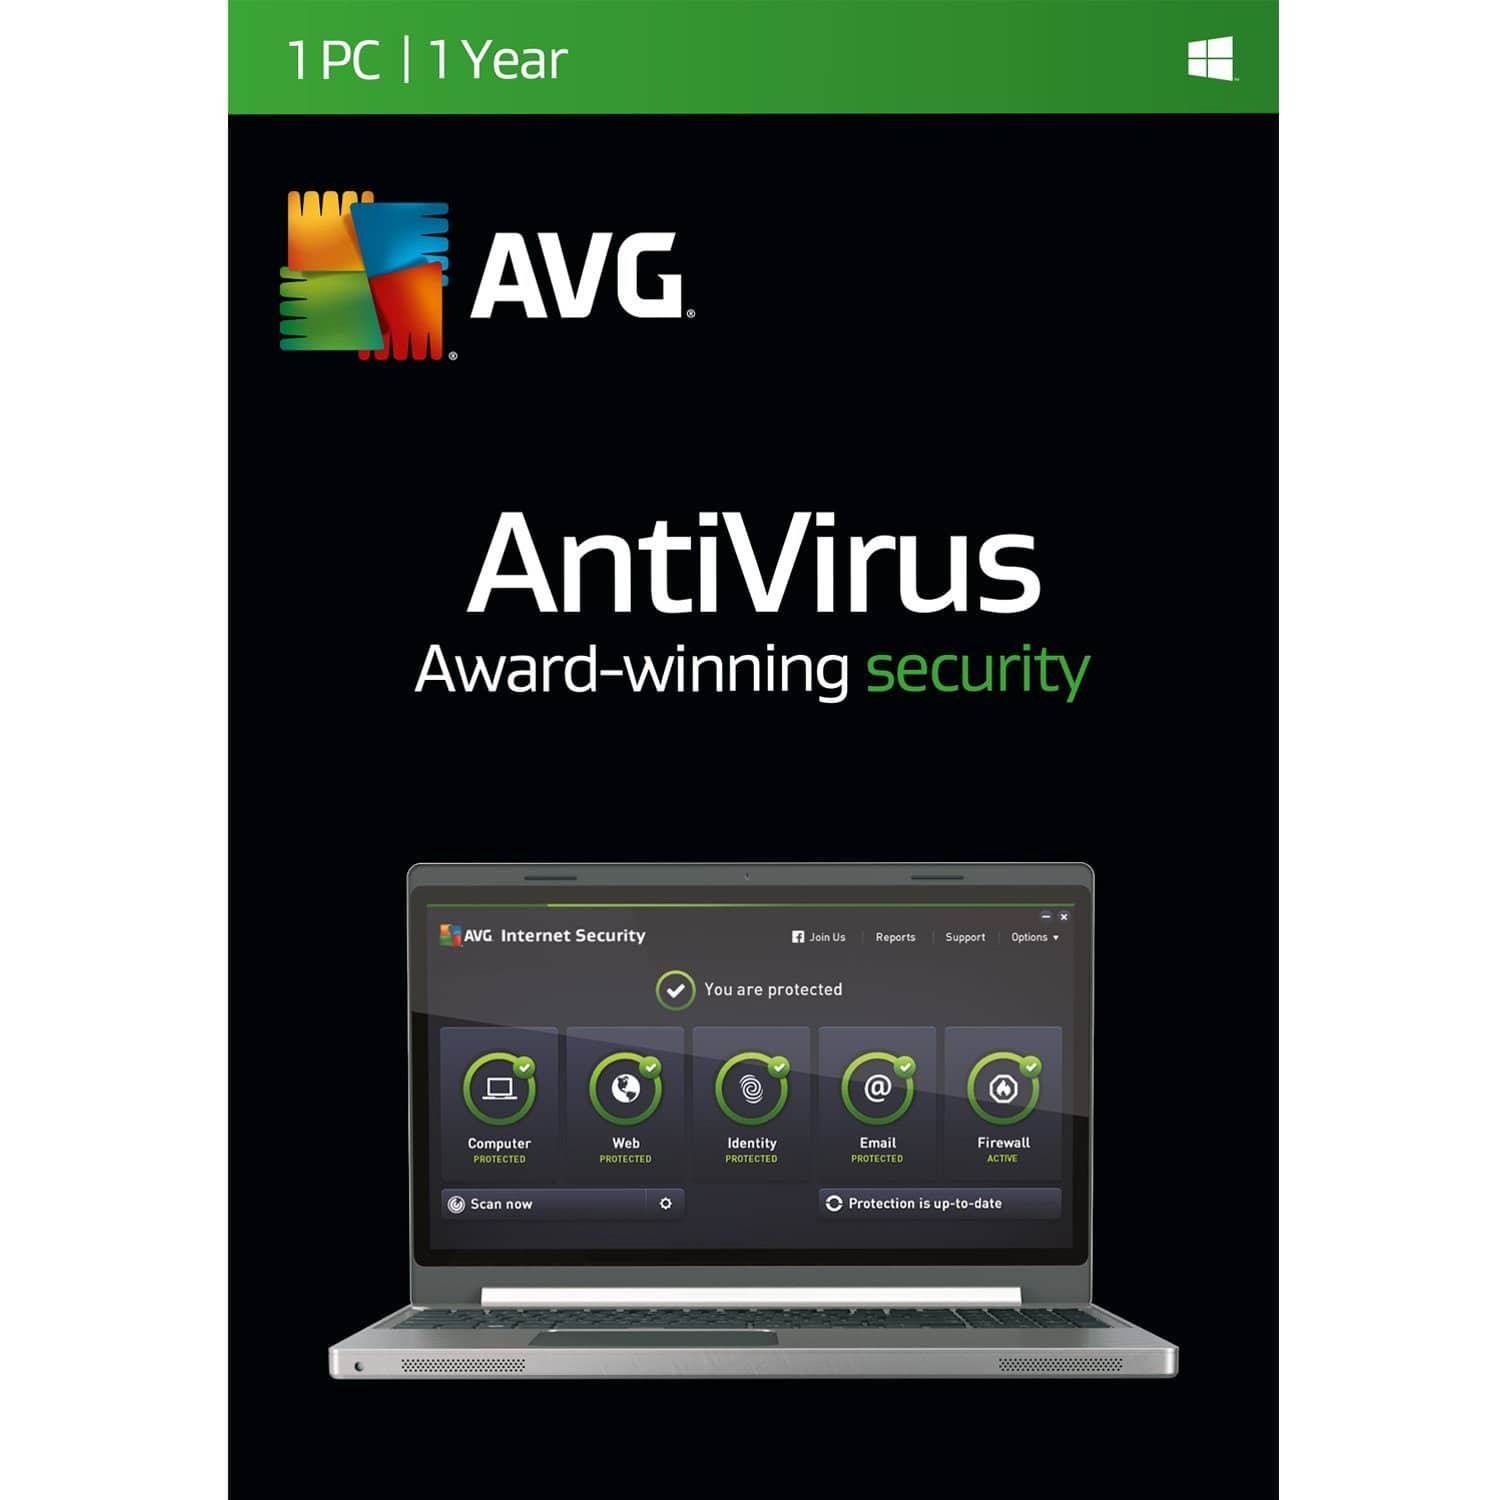 AVG Antivirus | 1 PC | 1 Year